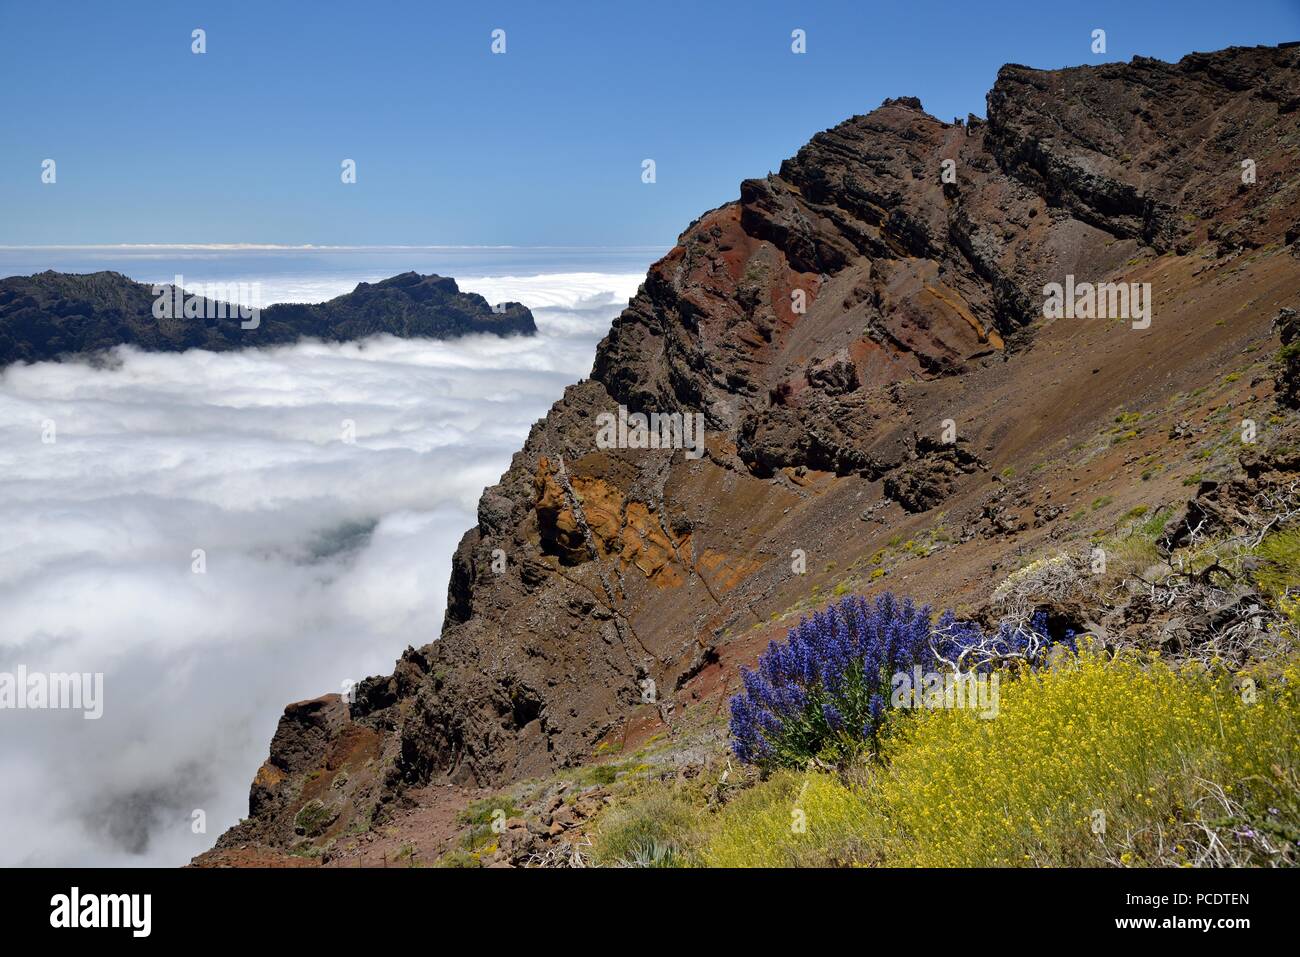 View from the Rim of Caldera de Taburiente, Roque de los Muchachos, La Palma, Canary Islands, Spain Stock Photo